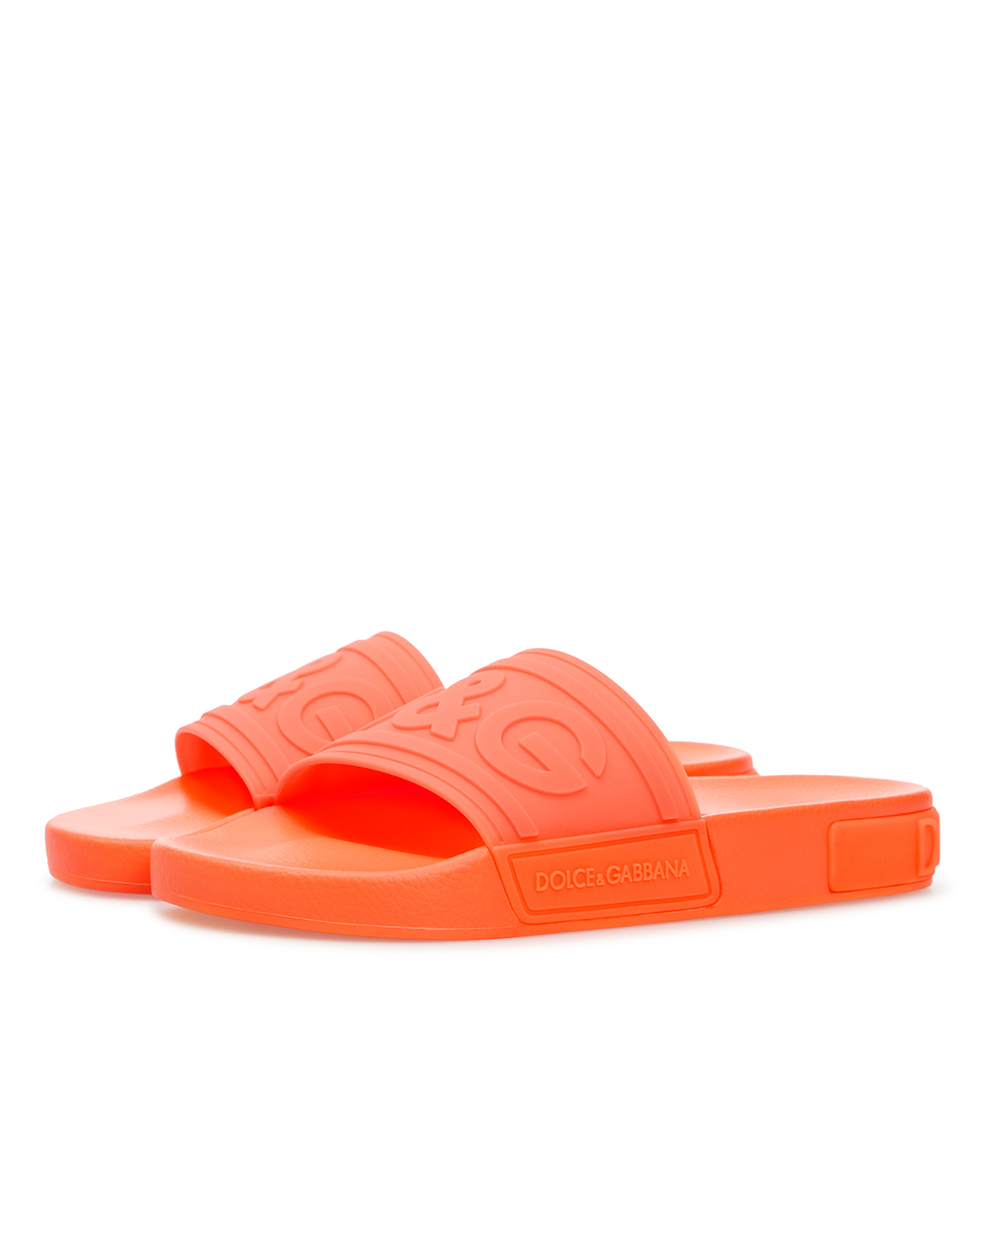 Слайдеры Dolce&Gabbana CW0141-AX756, оранжевый цвет • Купить в интернет-магазине Kameron